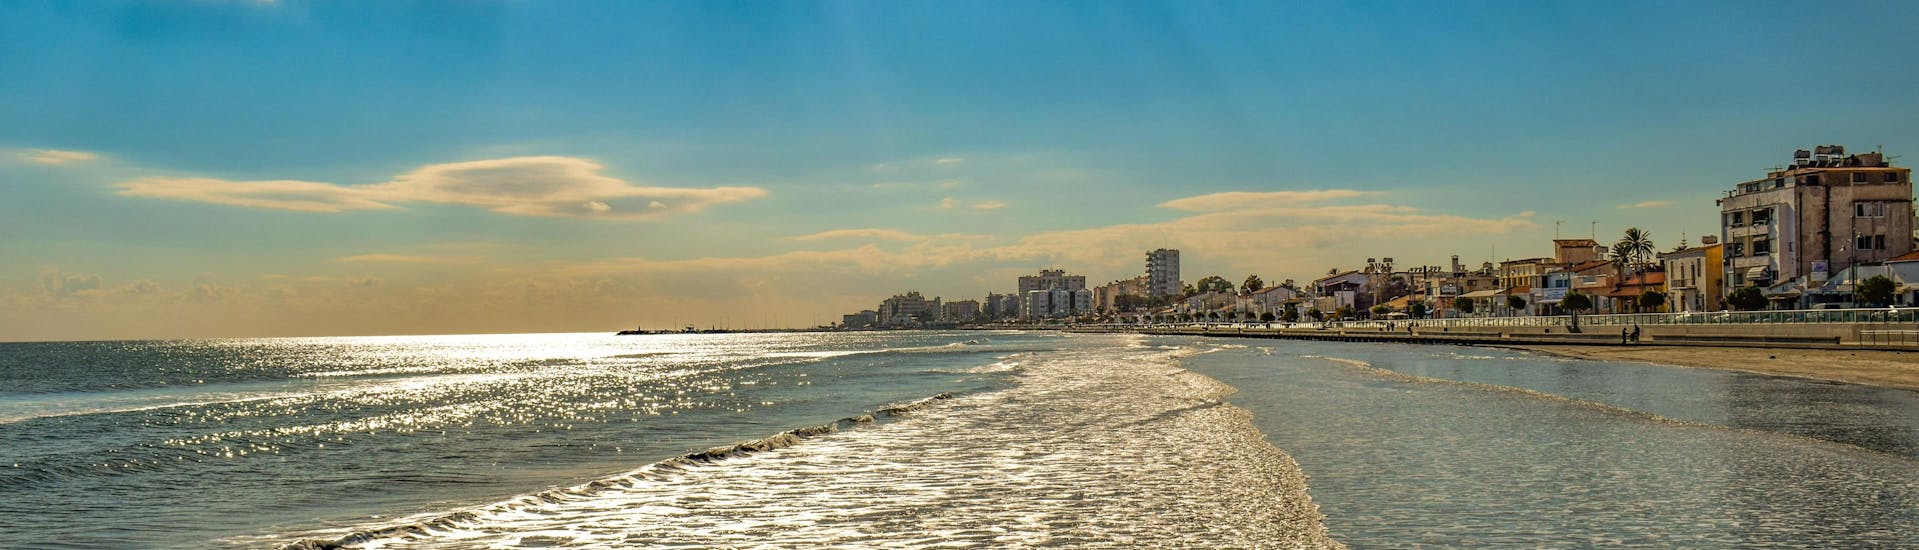 Mackenzie Beach in Larnaca, Cyprus.